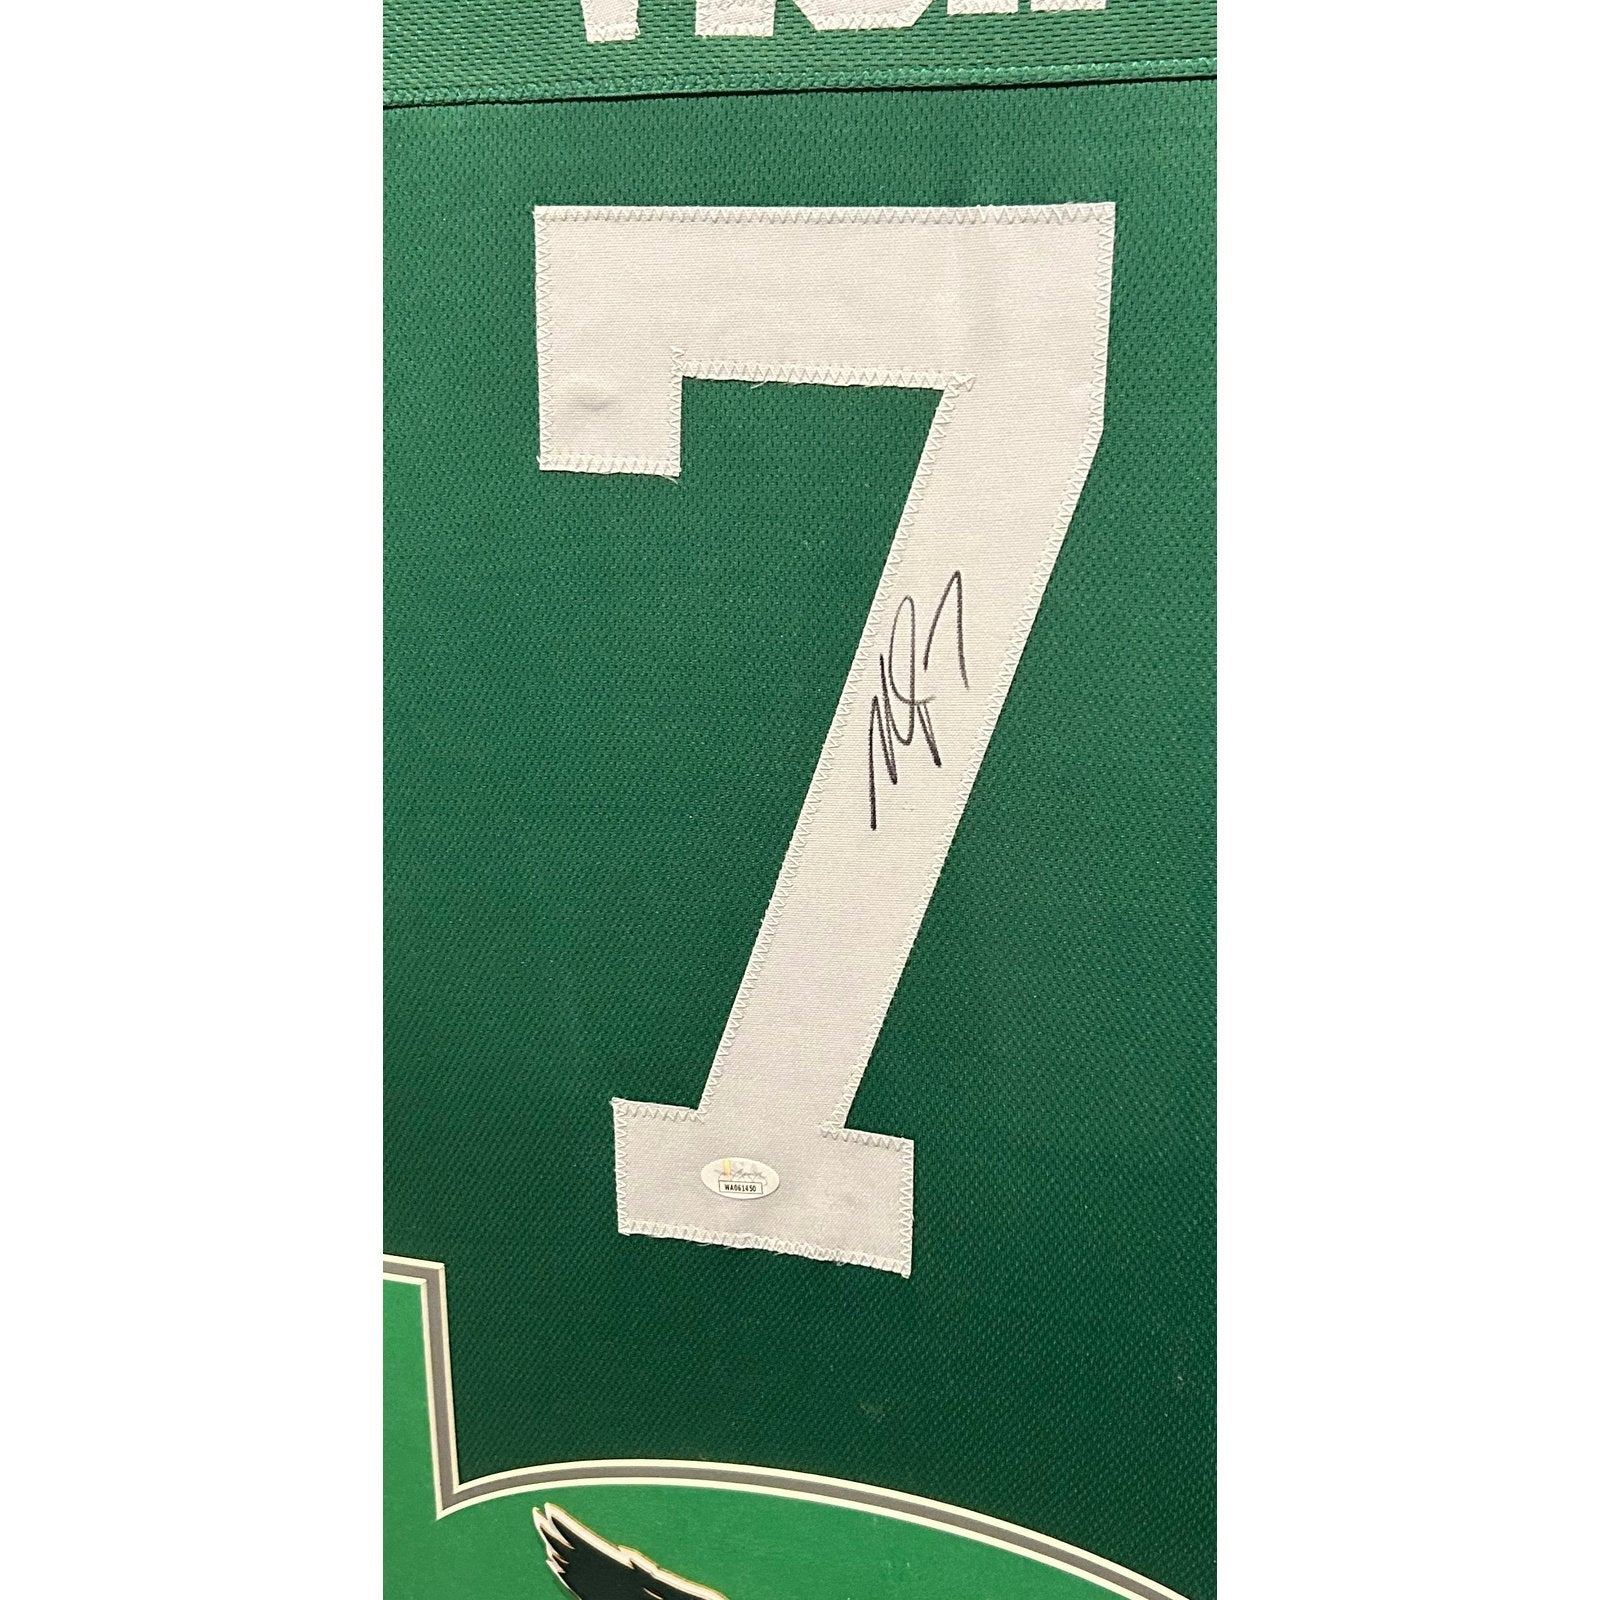 Michael Vick Framed Jersey JSA Autographed Signed Philadelphia Eagles